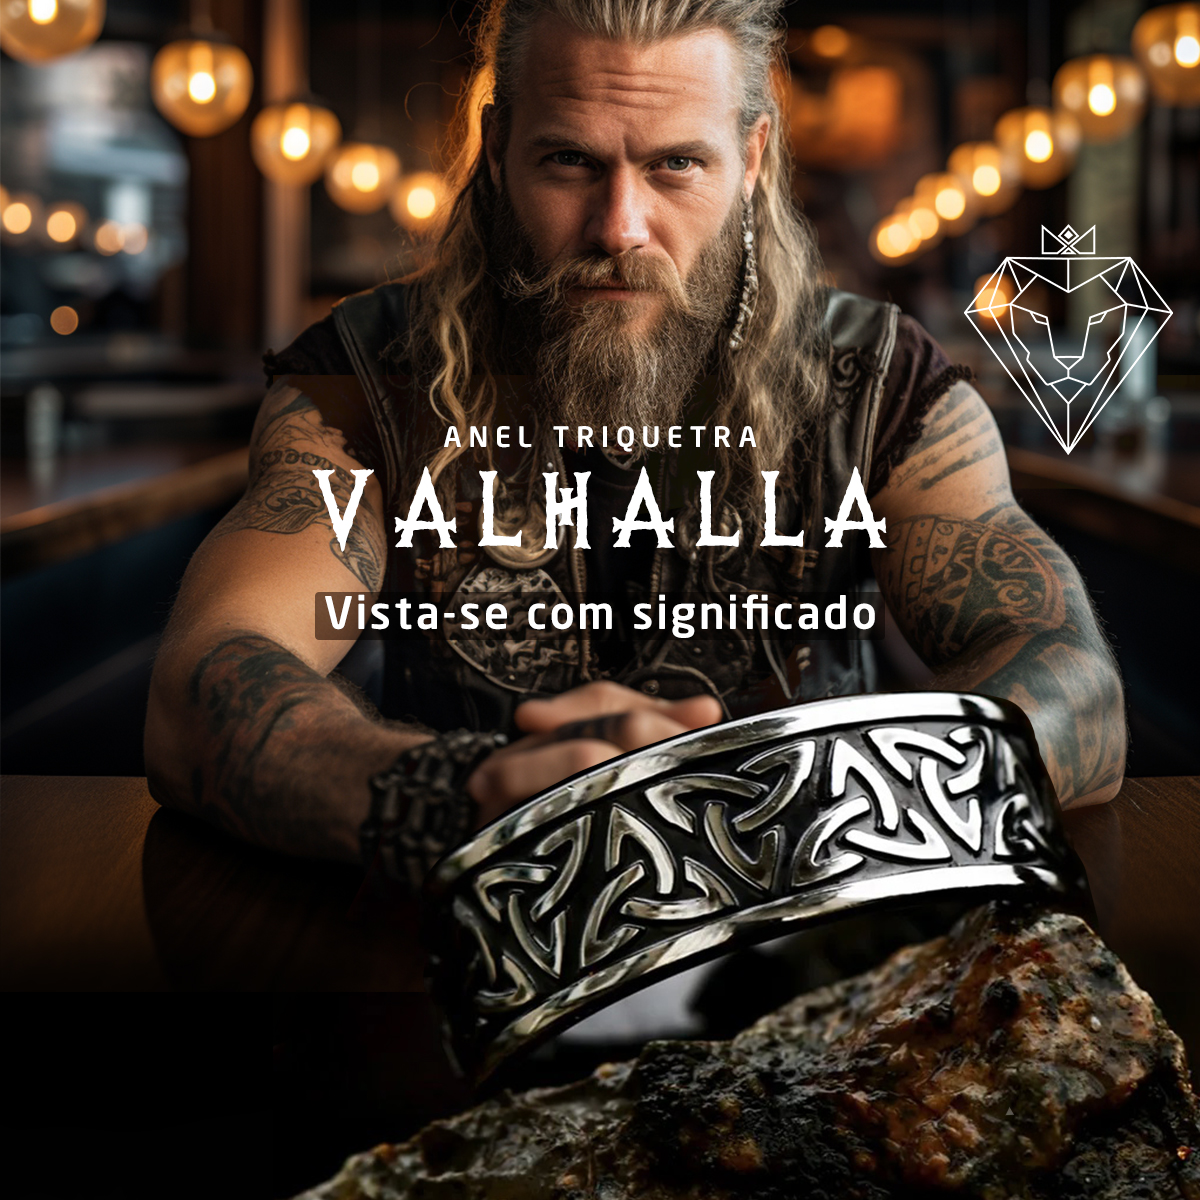 Cultura Viking, estilo, moda masculina, acessório de destaque, anel robusto, símbolo celta, Valhalla, triquetra, significado, masculinidade, personalidade, presença